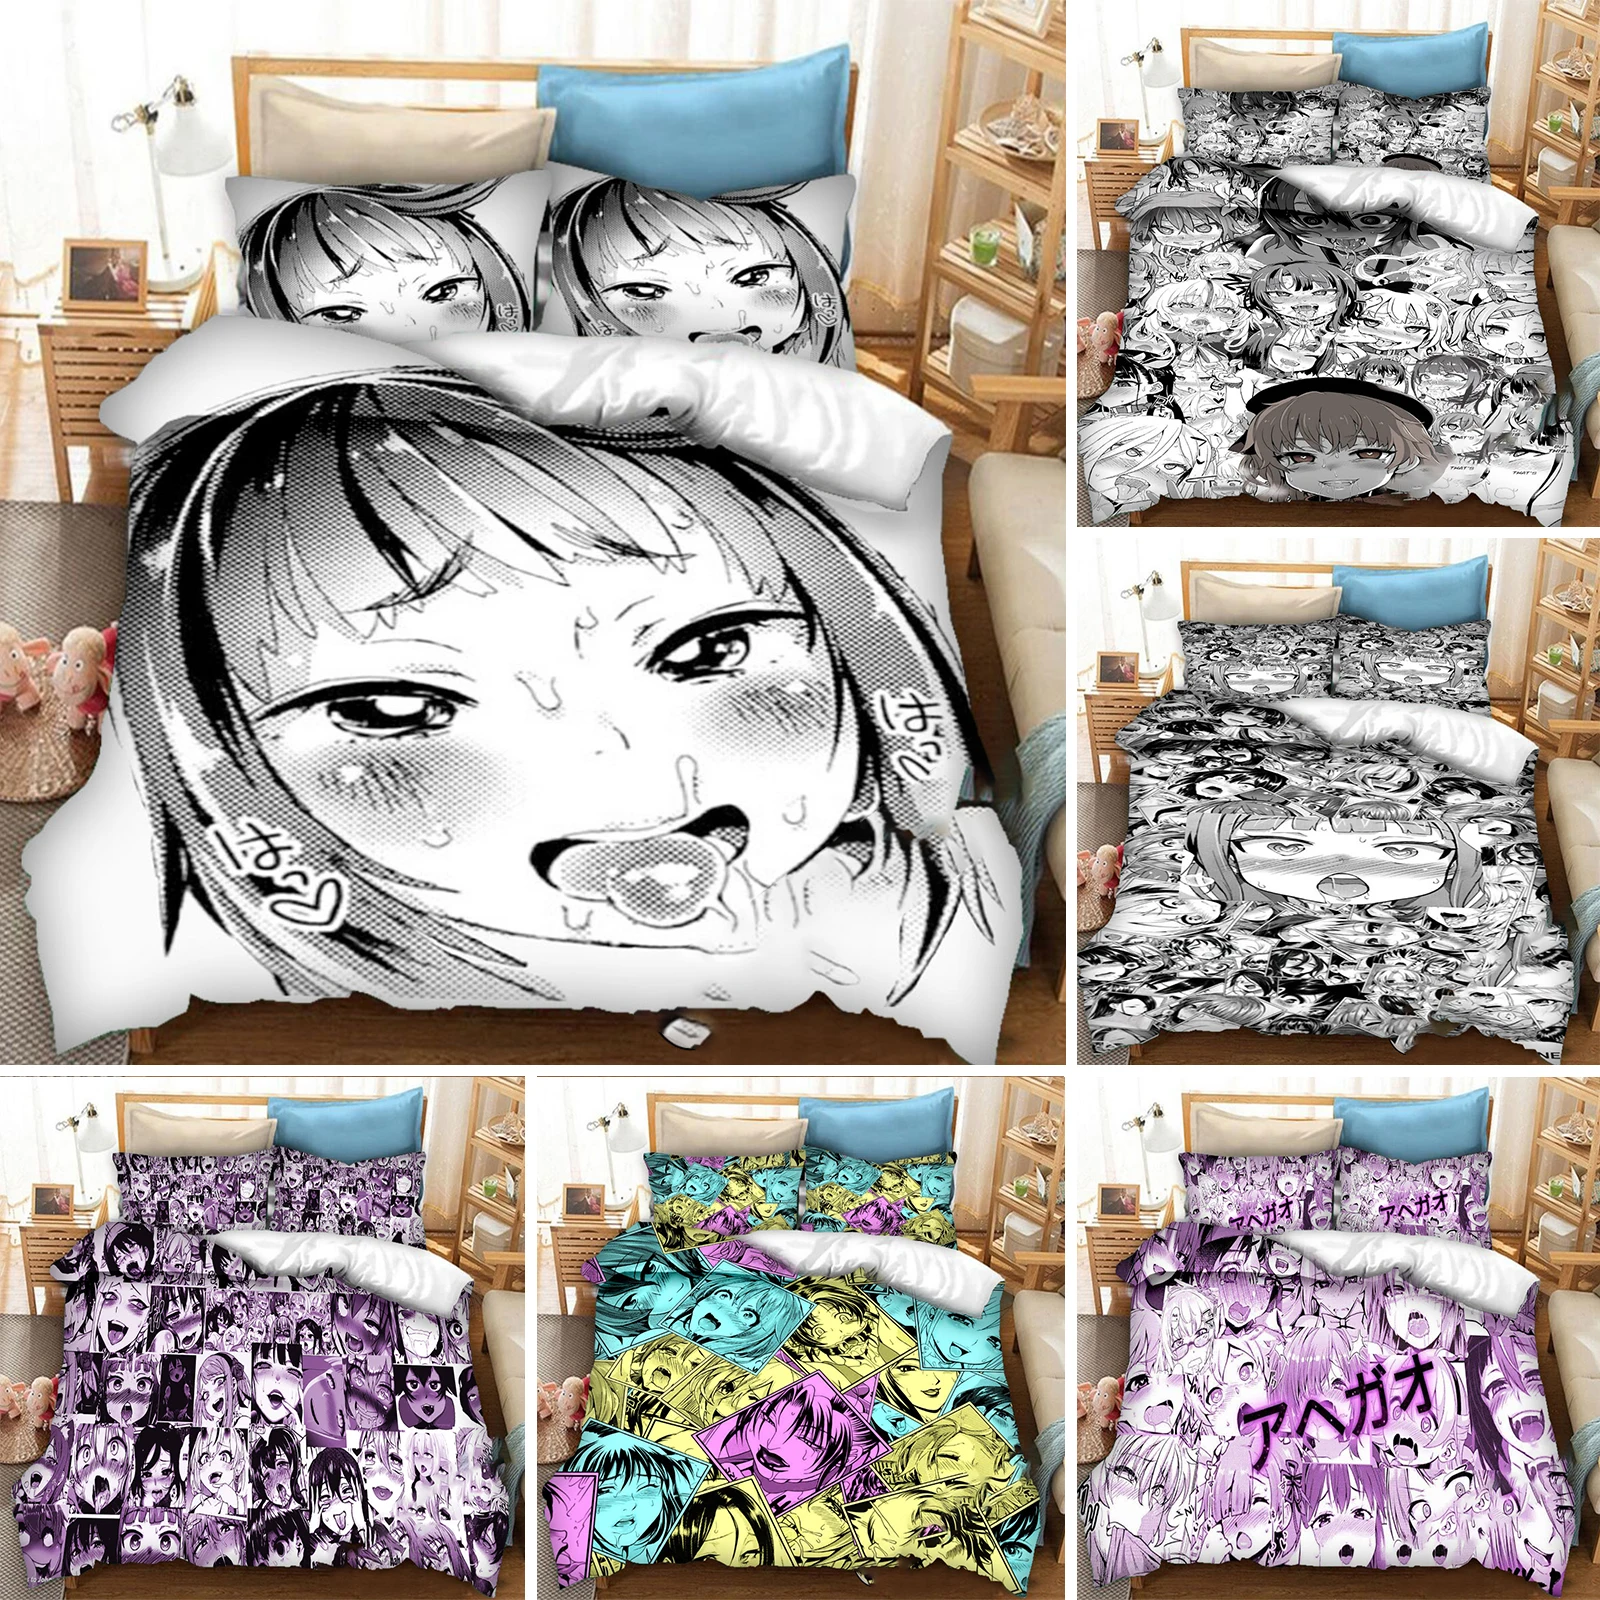 Anime Ahegao-Juego de cama Hentai para niños y adultos, funda de edredón con funda de almohada, 3 piezas